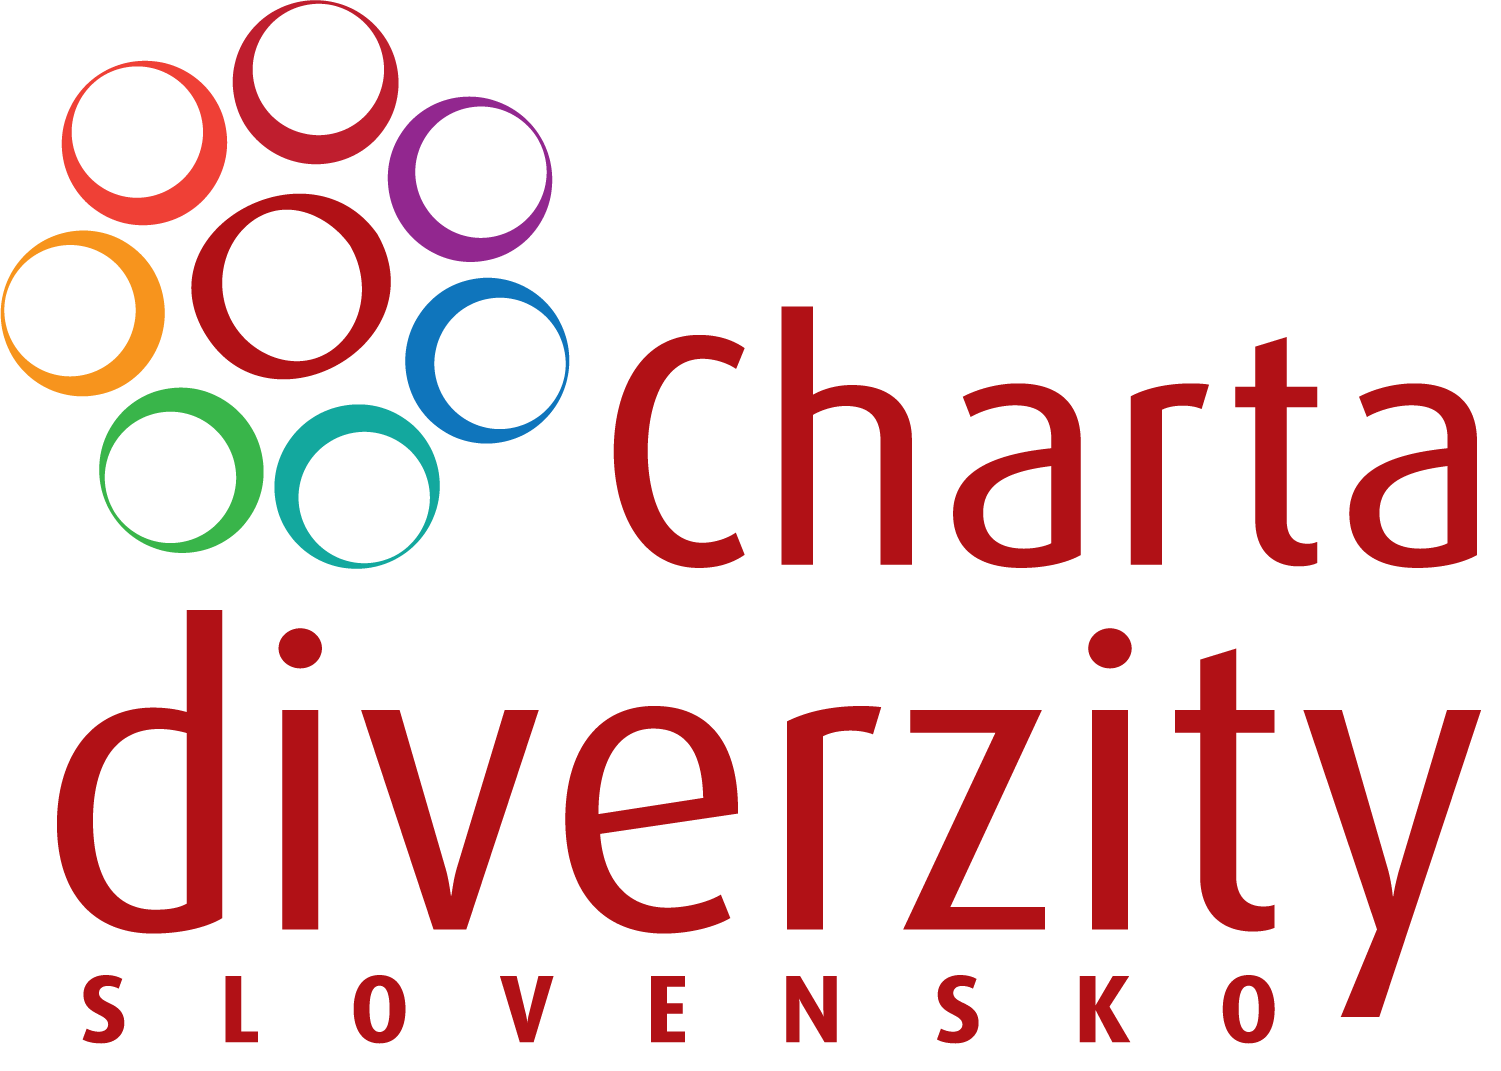 Diversity Charter Slovakia